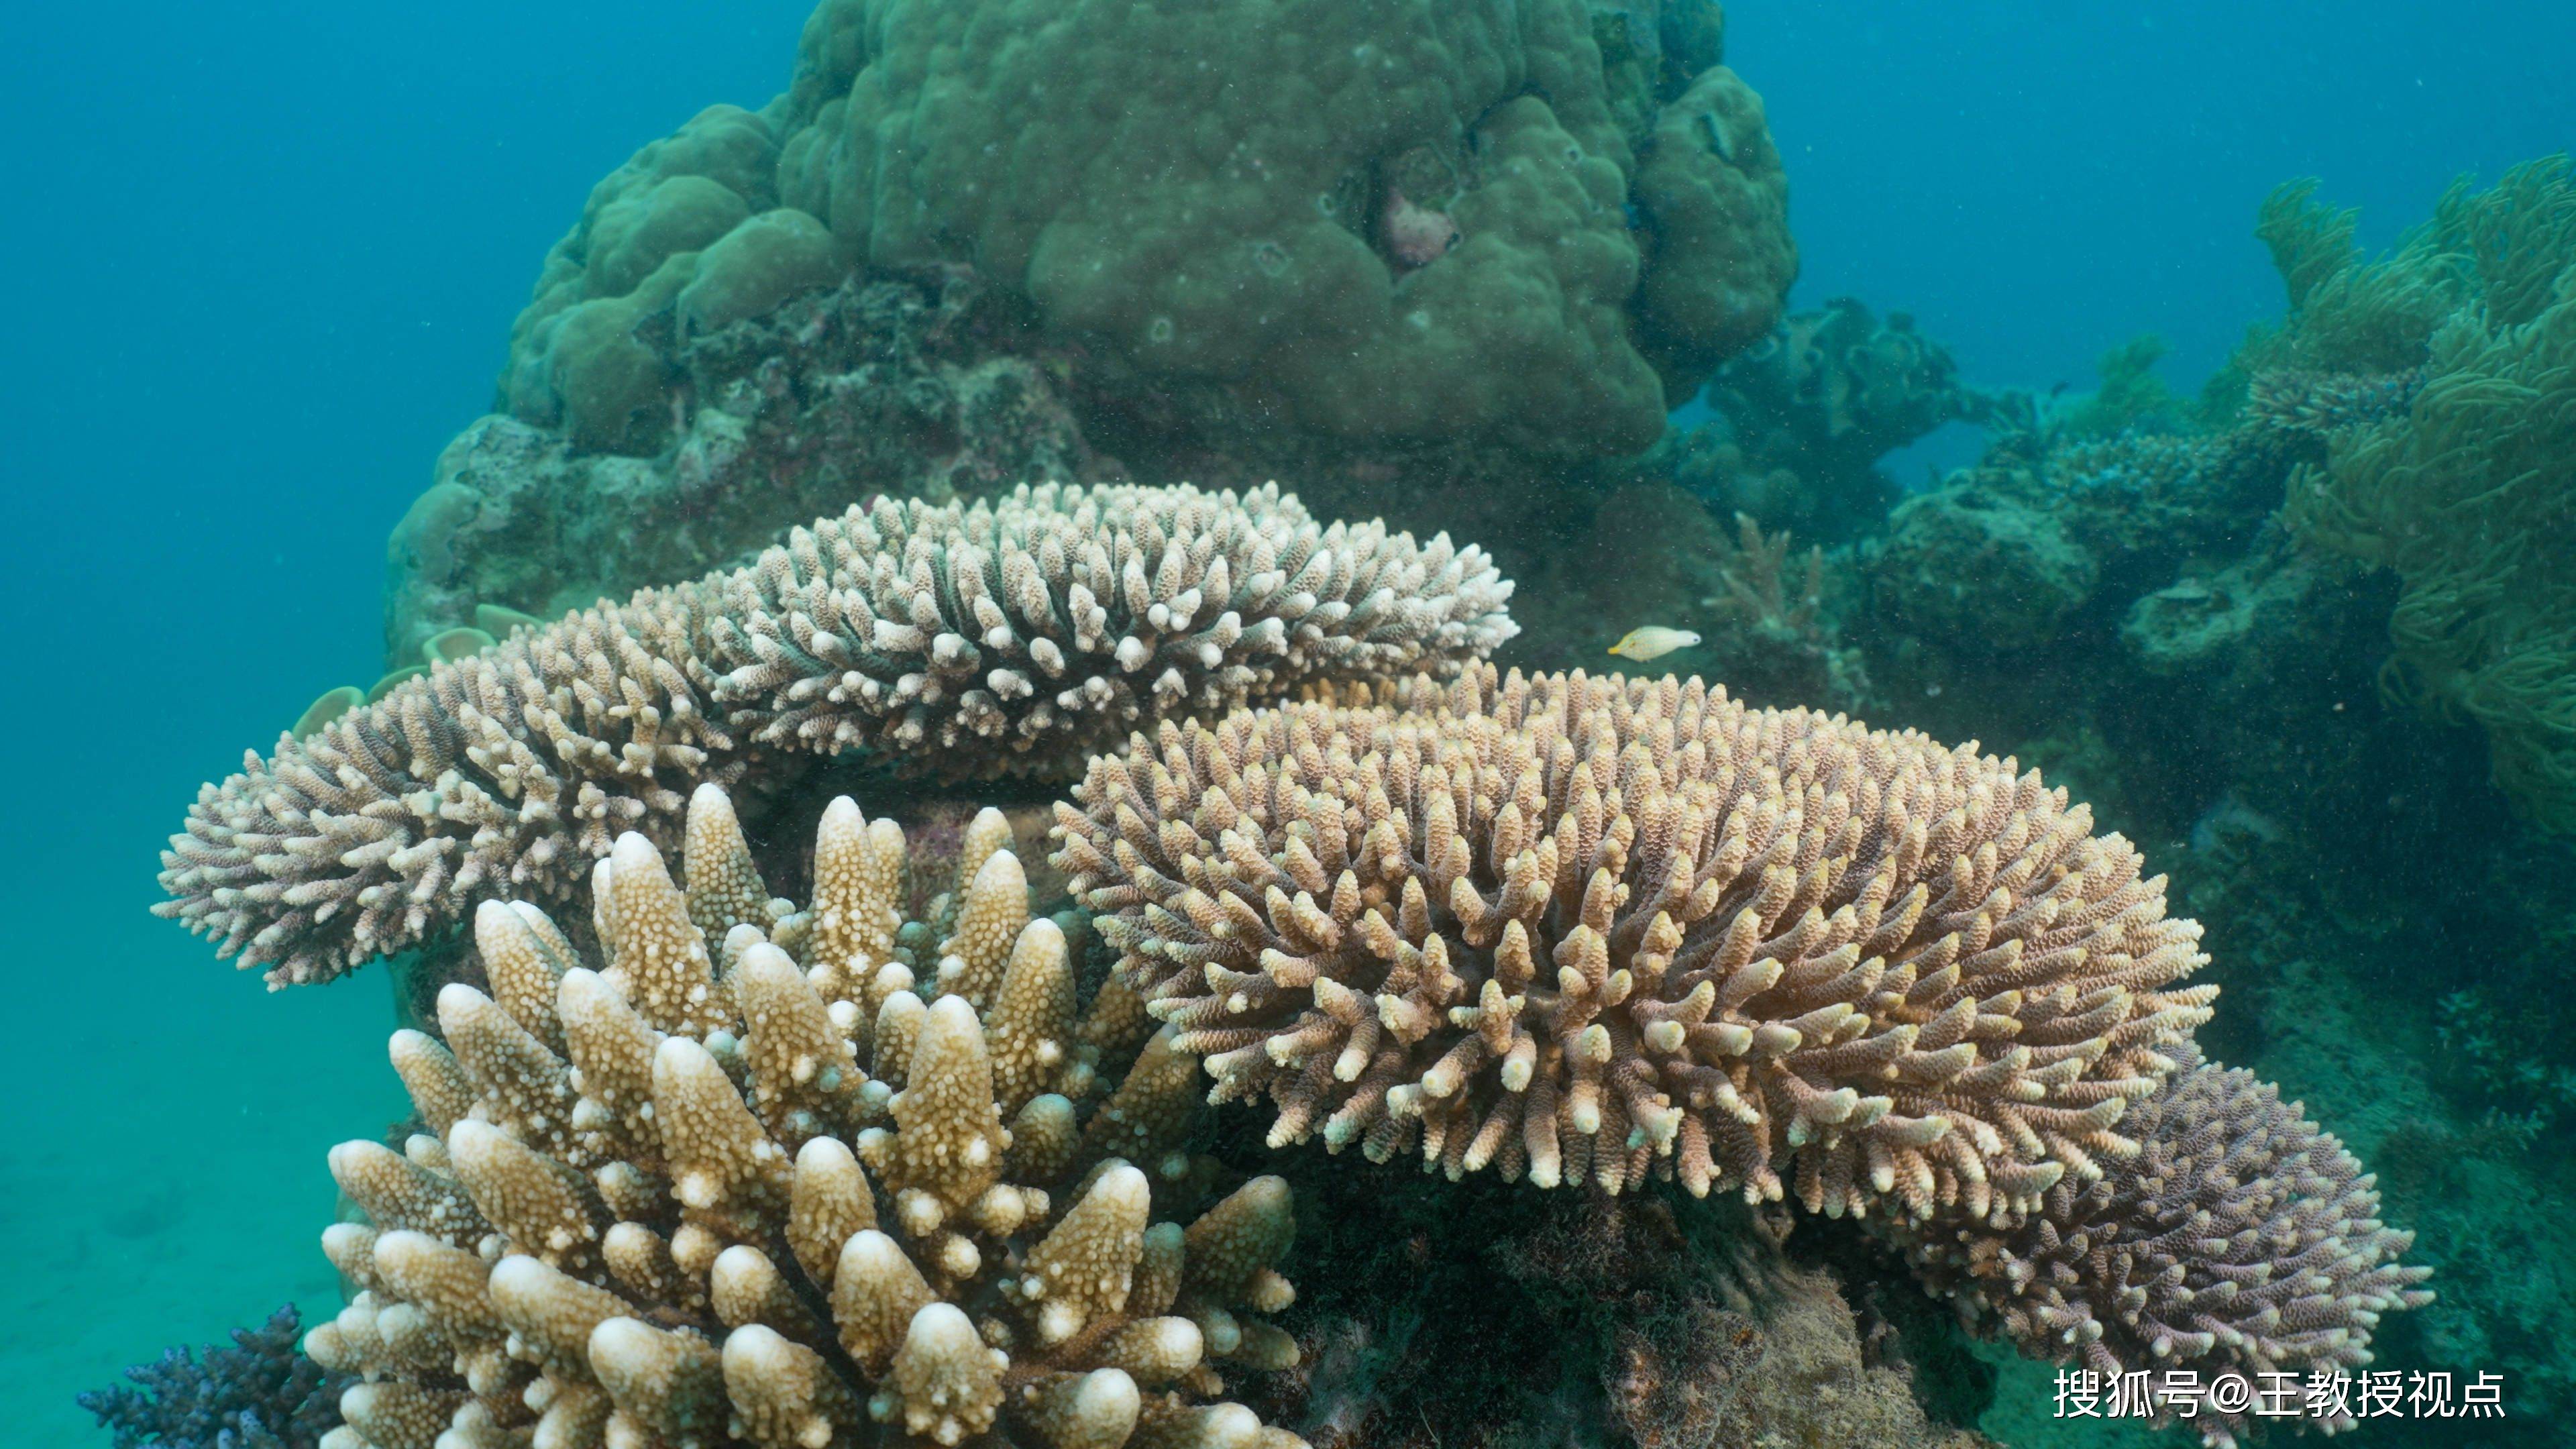 大堡礁的海洋生态:科学视角下的美丽奇迹